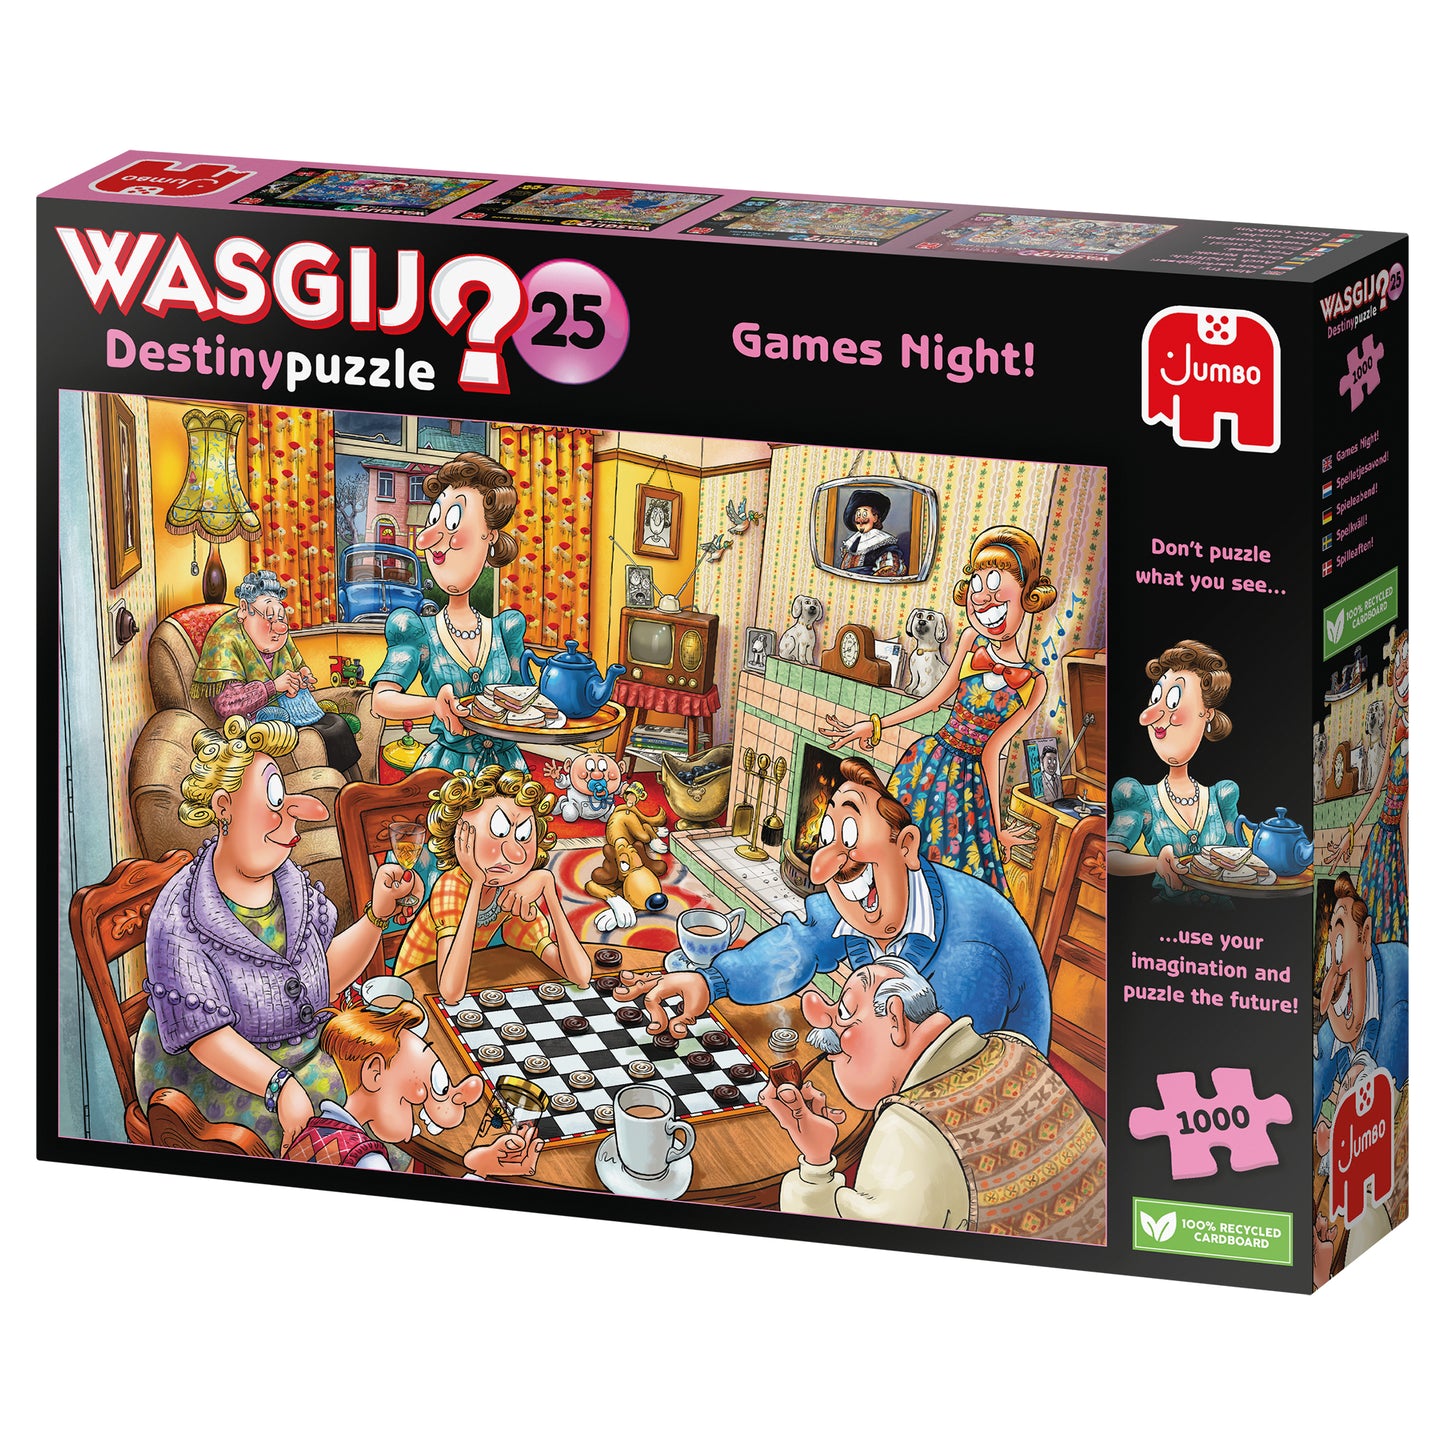 Wasgij Destiny 25 - Games Night! - 1000 Piece Jigsaw Puzzle